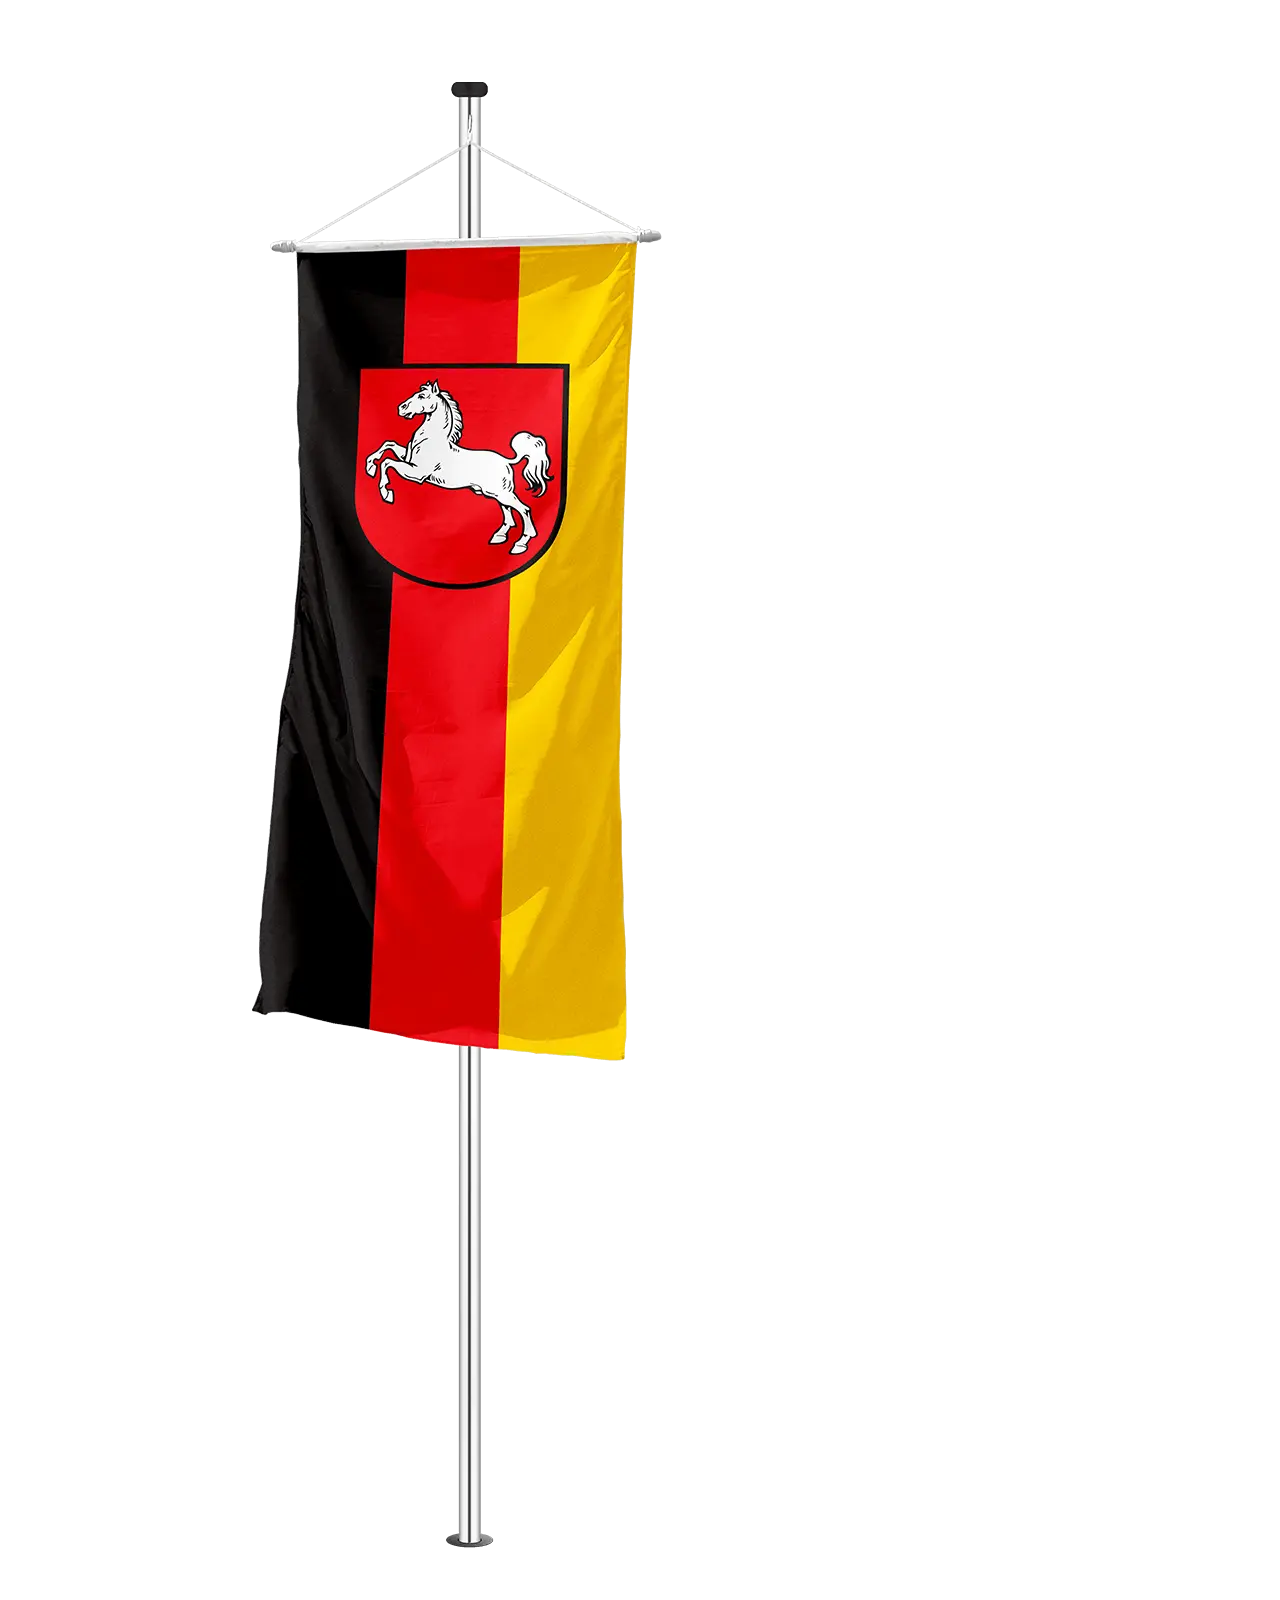 Fahne Niedersachsen